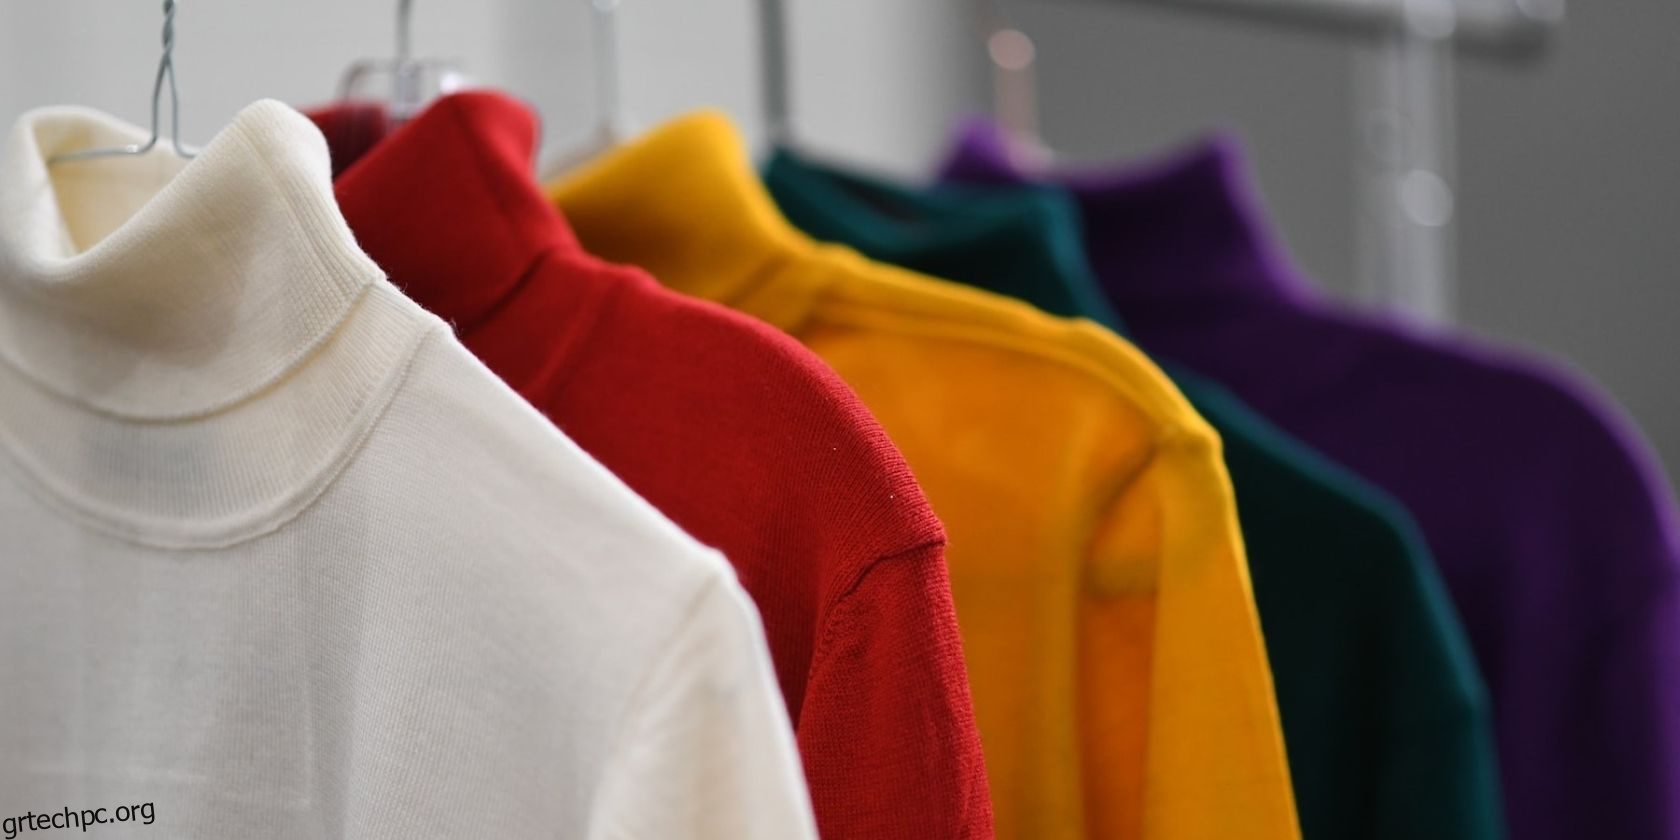 Οι 8 καλύτερες εφαρμογές για να οργανώσετε τη ντουλάπα σας και να σχεδιάσετε ρούχα